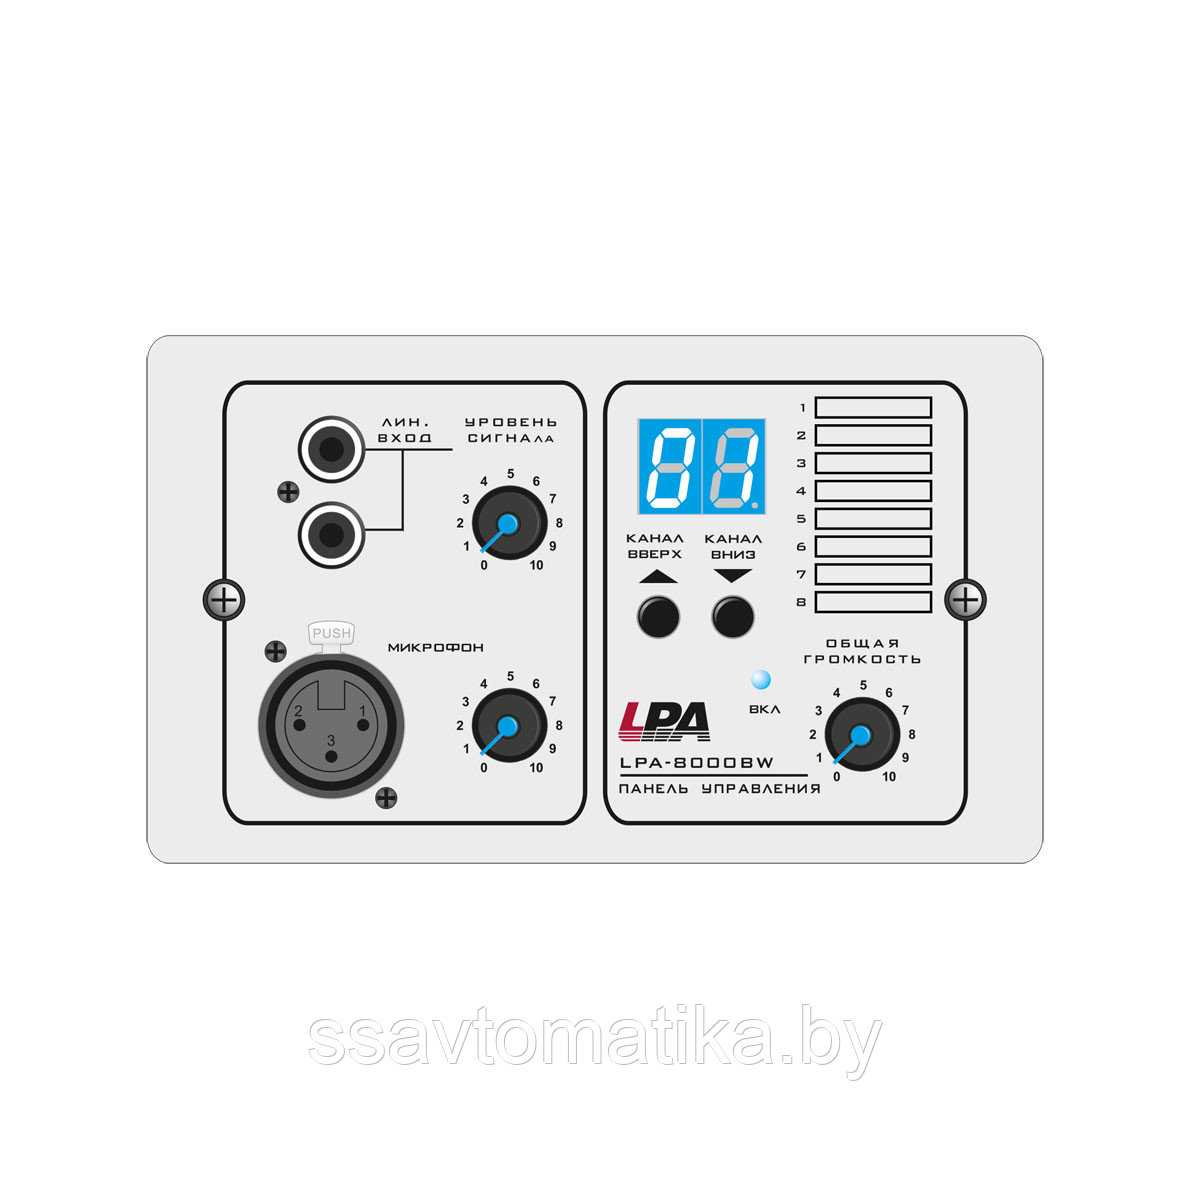 Панель управления звуком LPA-8000BW